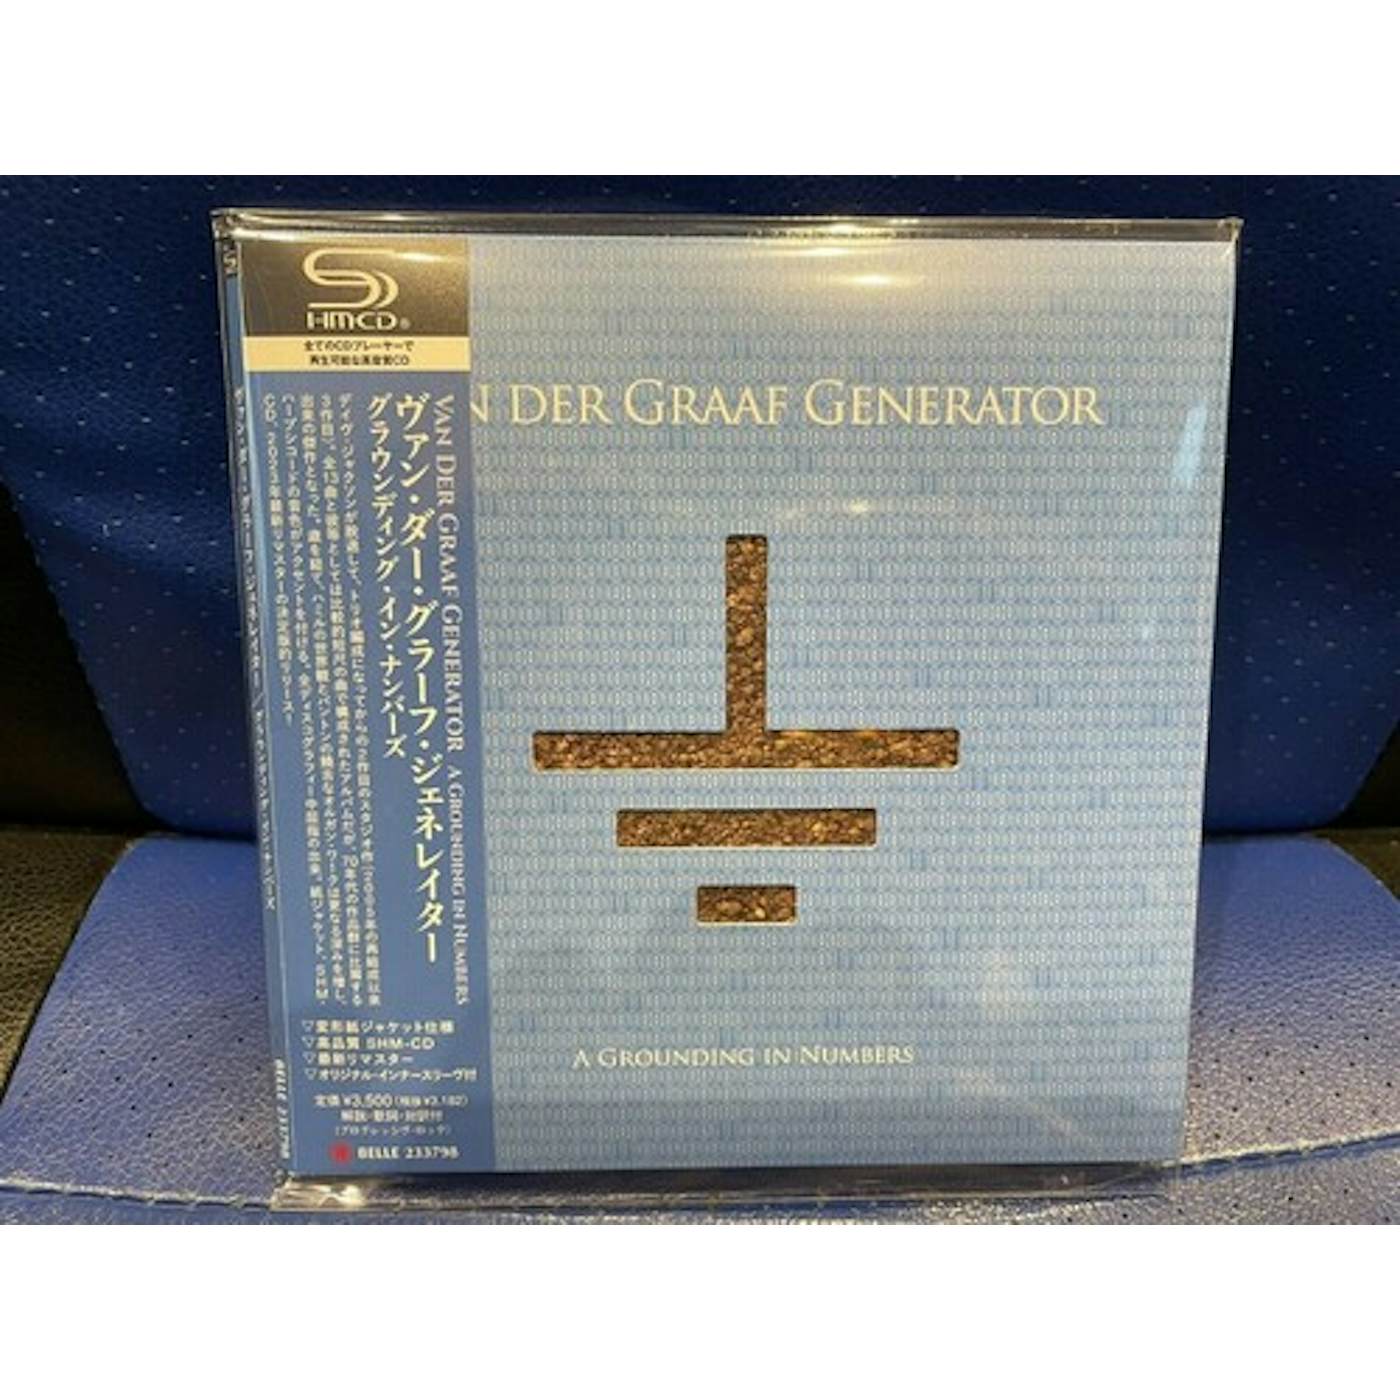 Van Der Graaf Generator GROUNDING IN NUMBERS CD